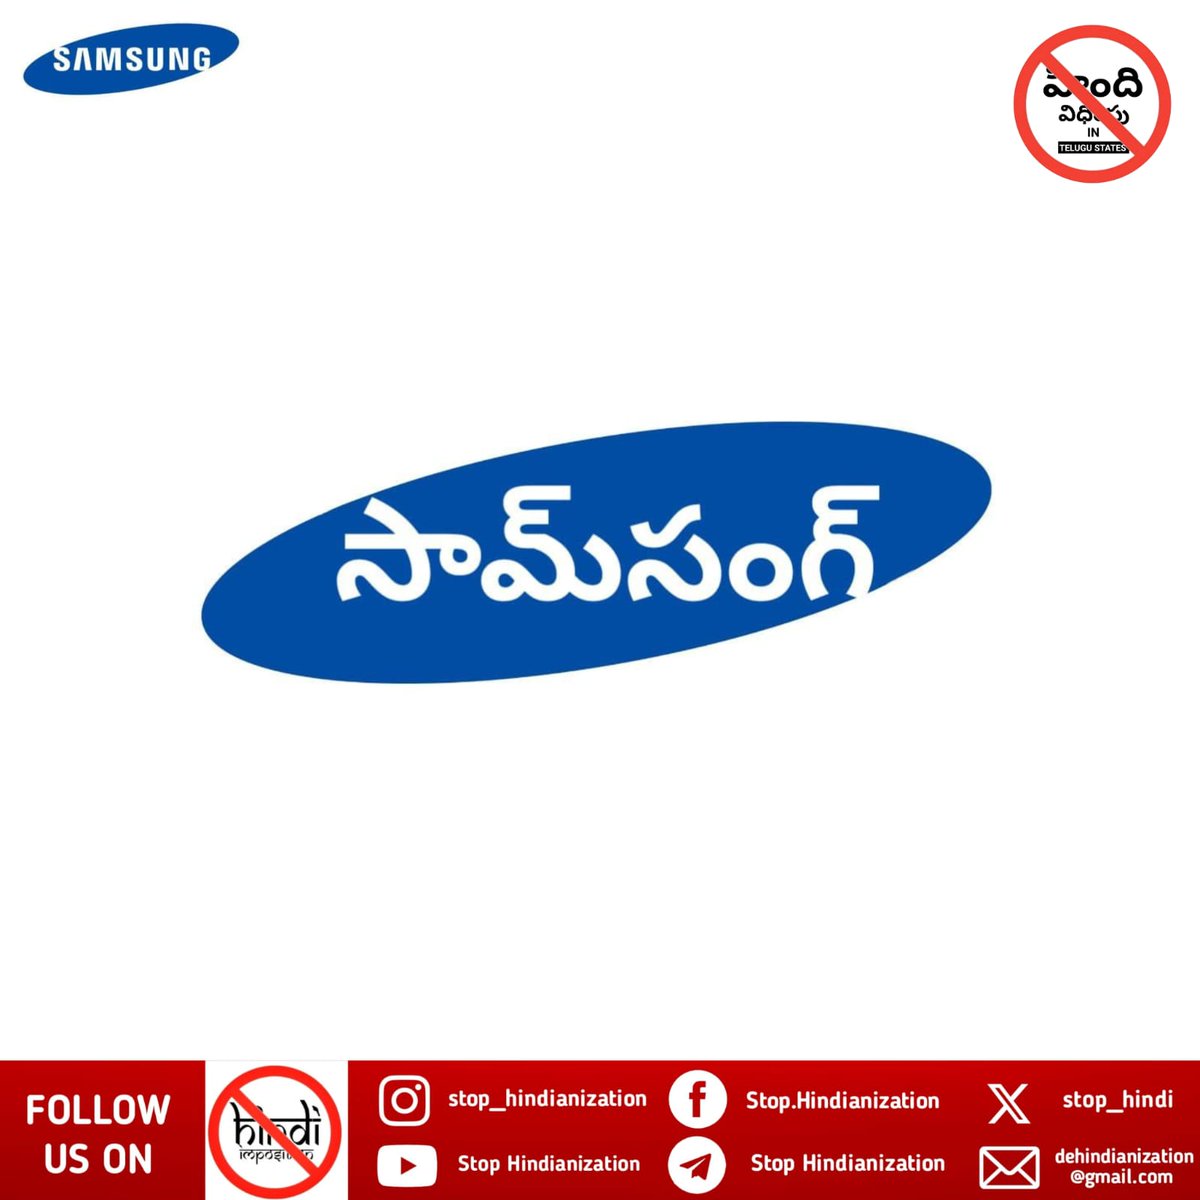 సామ్‌సంగ్ లోగో తెలుగులో Telugu Logo Series 2 - Samsung @SamsungIndia #Samsung #తెలుగు #తెలంగాణ #ఆంధ్ర #రాయలసీమ #Telugu #Telugustates #india #Indian